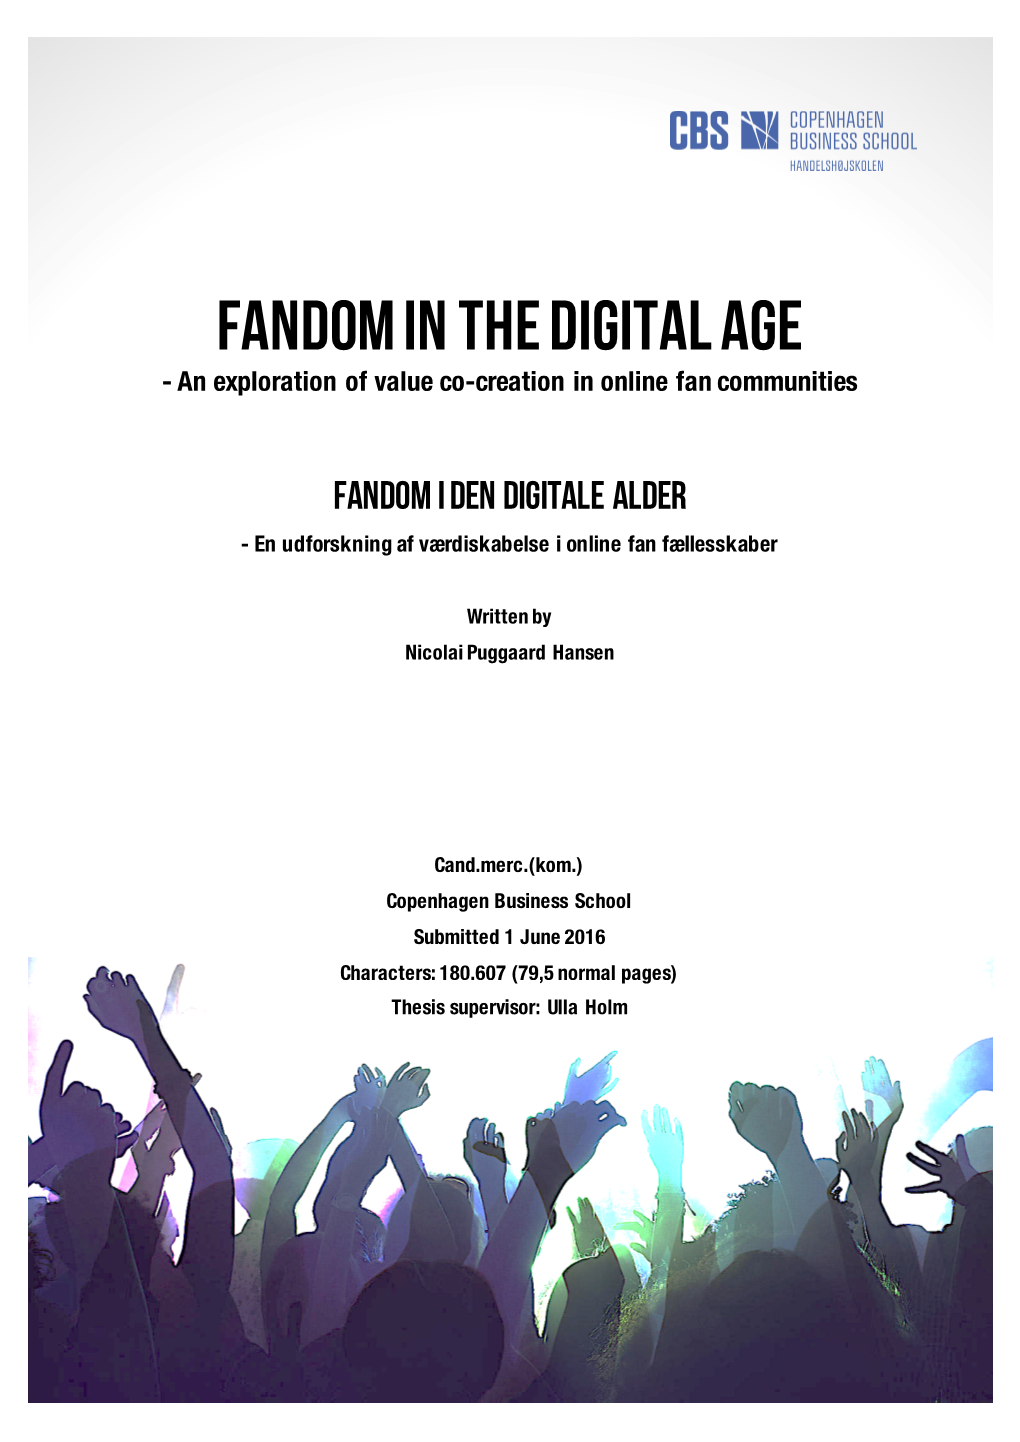 Fandom in the Digital Age - an Exploration of Value Co-Creation in Online Fan Communities